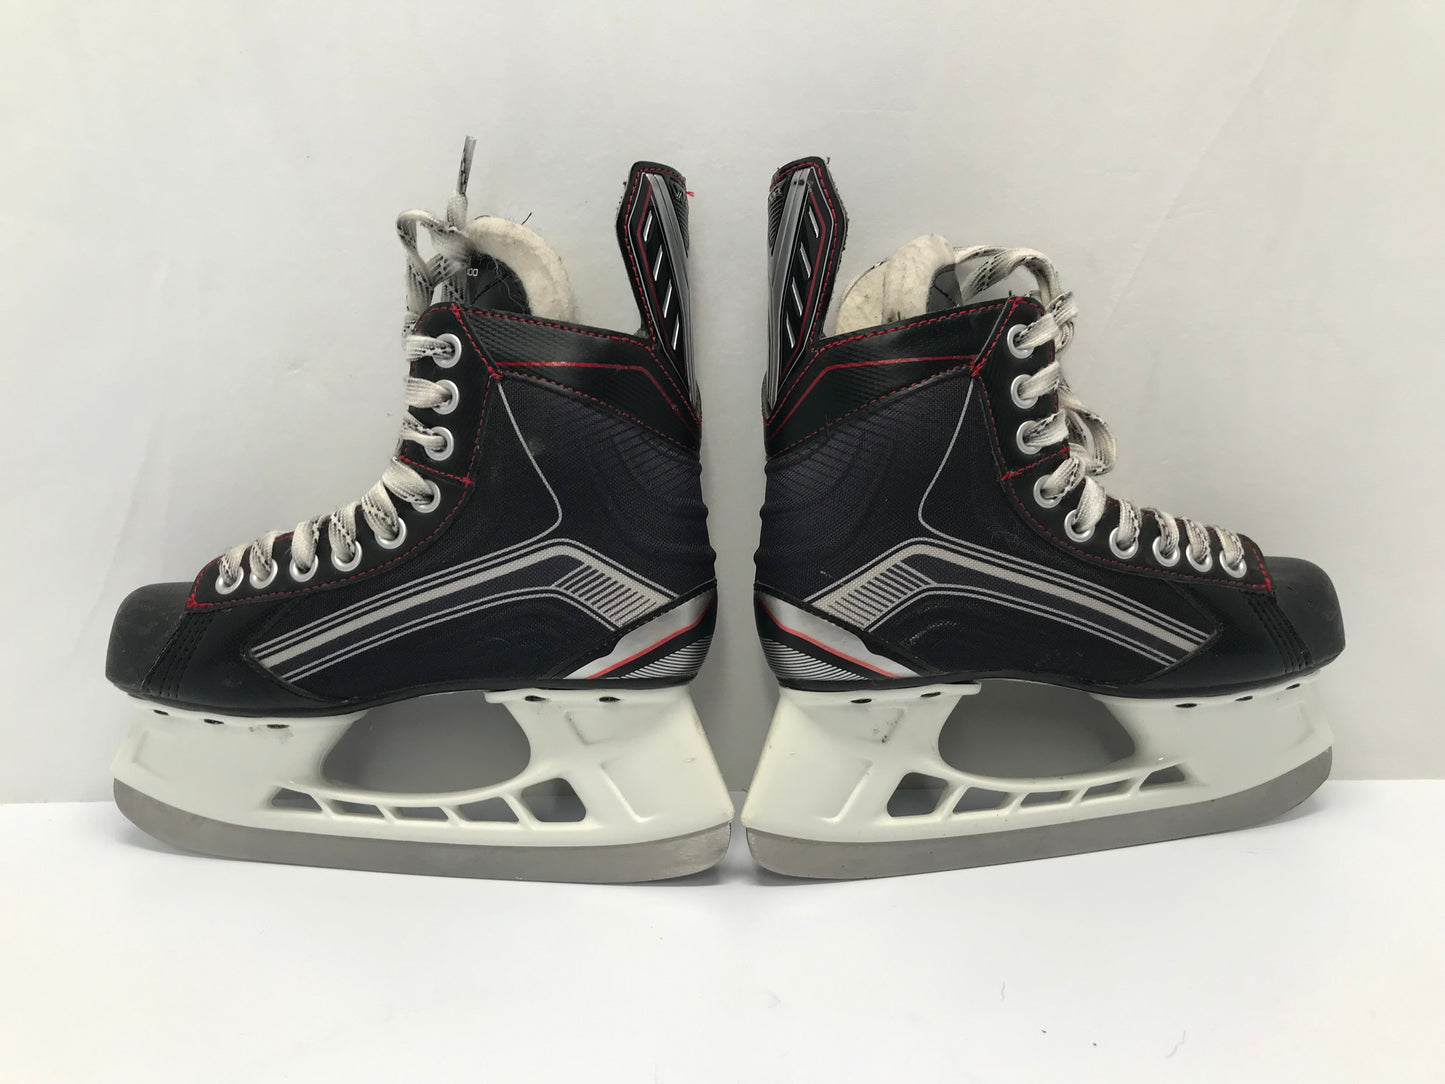 Hockey Skates Child Size 3 Shoe Size Bauer Vapor X400 Excellent